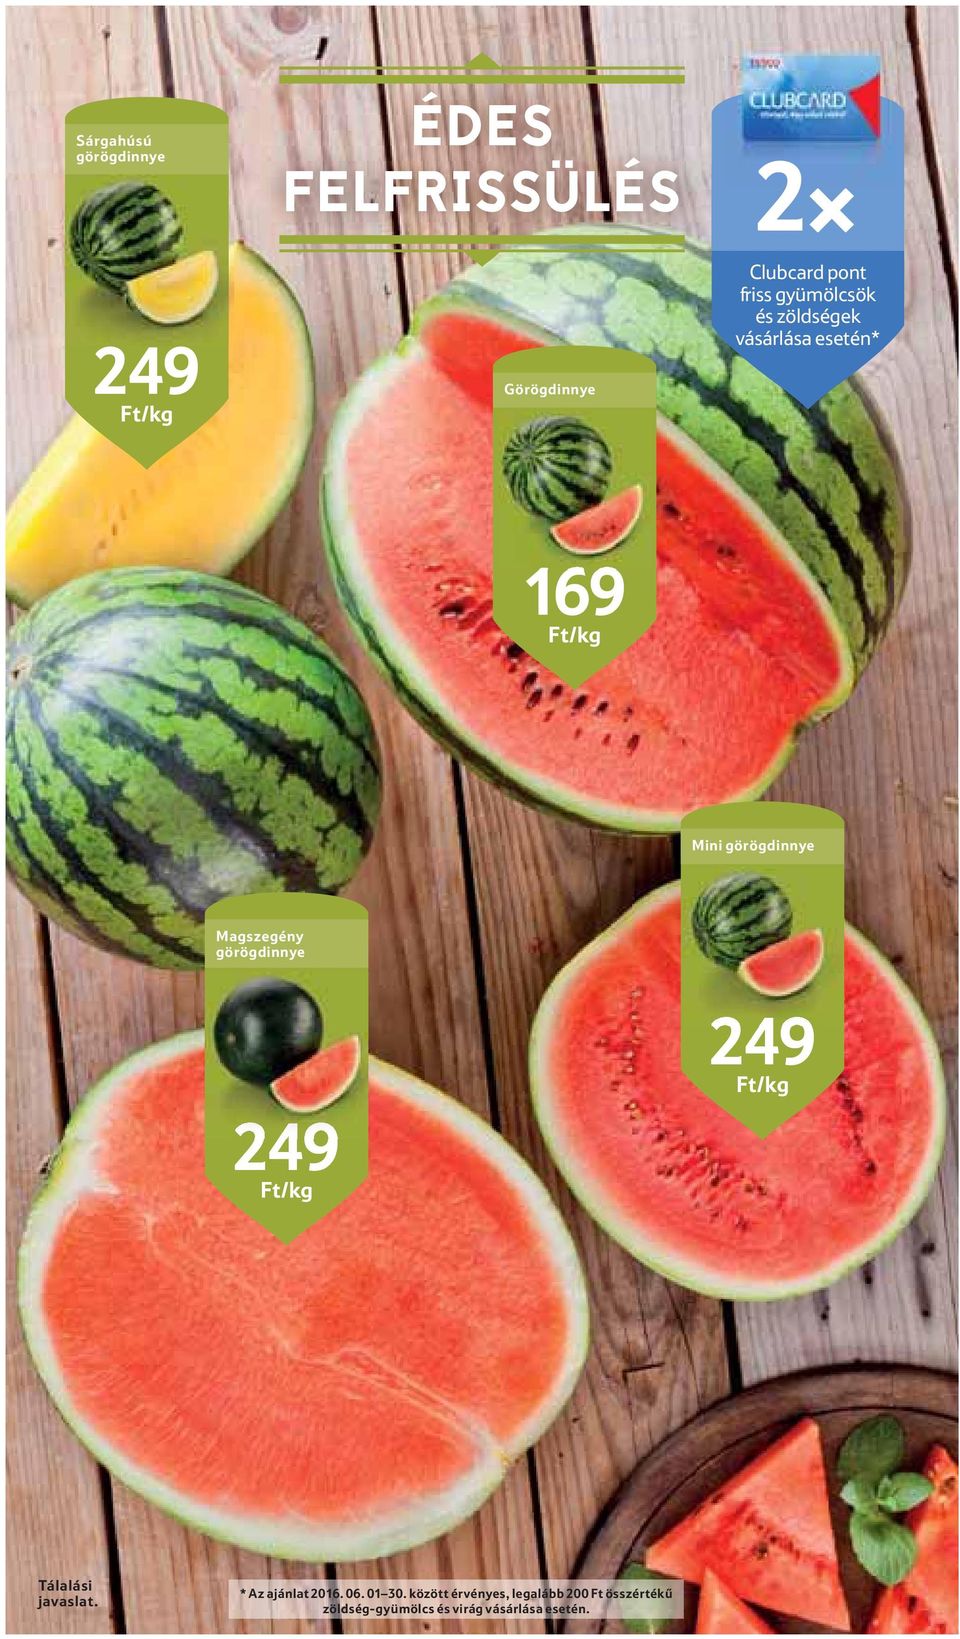 Magszegény görögdinnye 249 Ft/kg 249 Ft/kg Tálalási javaslat. * Az ajánlat 2016.